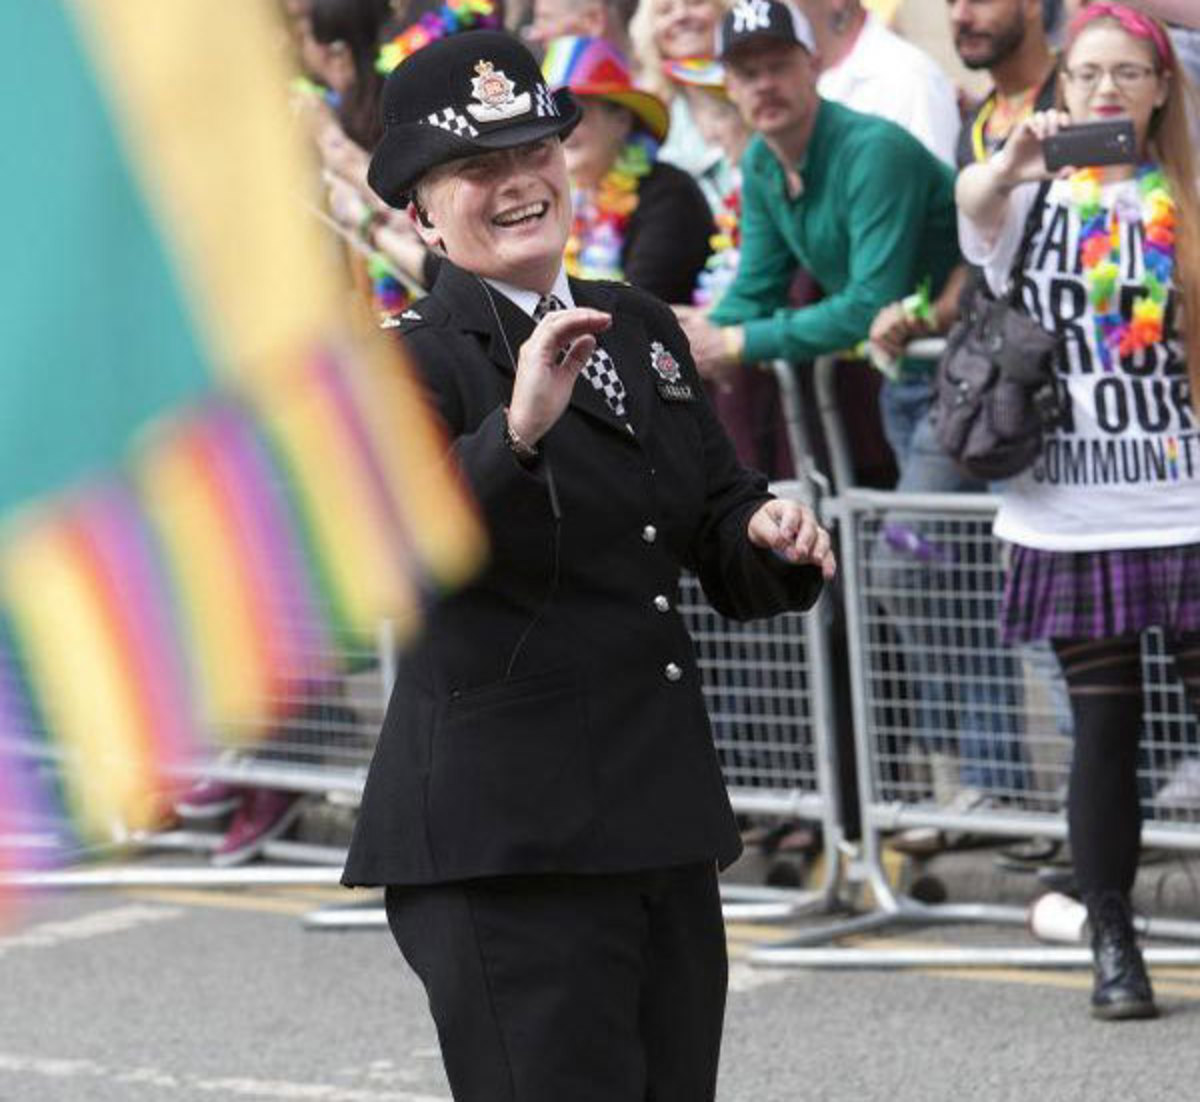 Άφησε τις χειροπέδες κι έπιασε το χορό! Η αστυνομικός που έγινε… viral (ΒΙΝΤΕΟ)